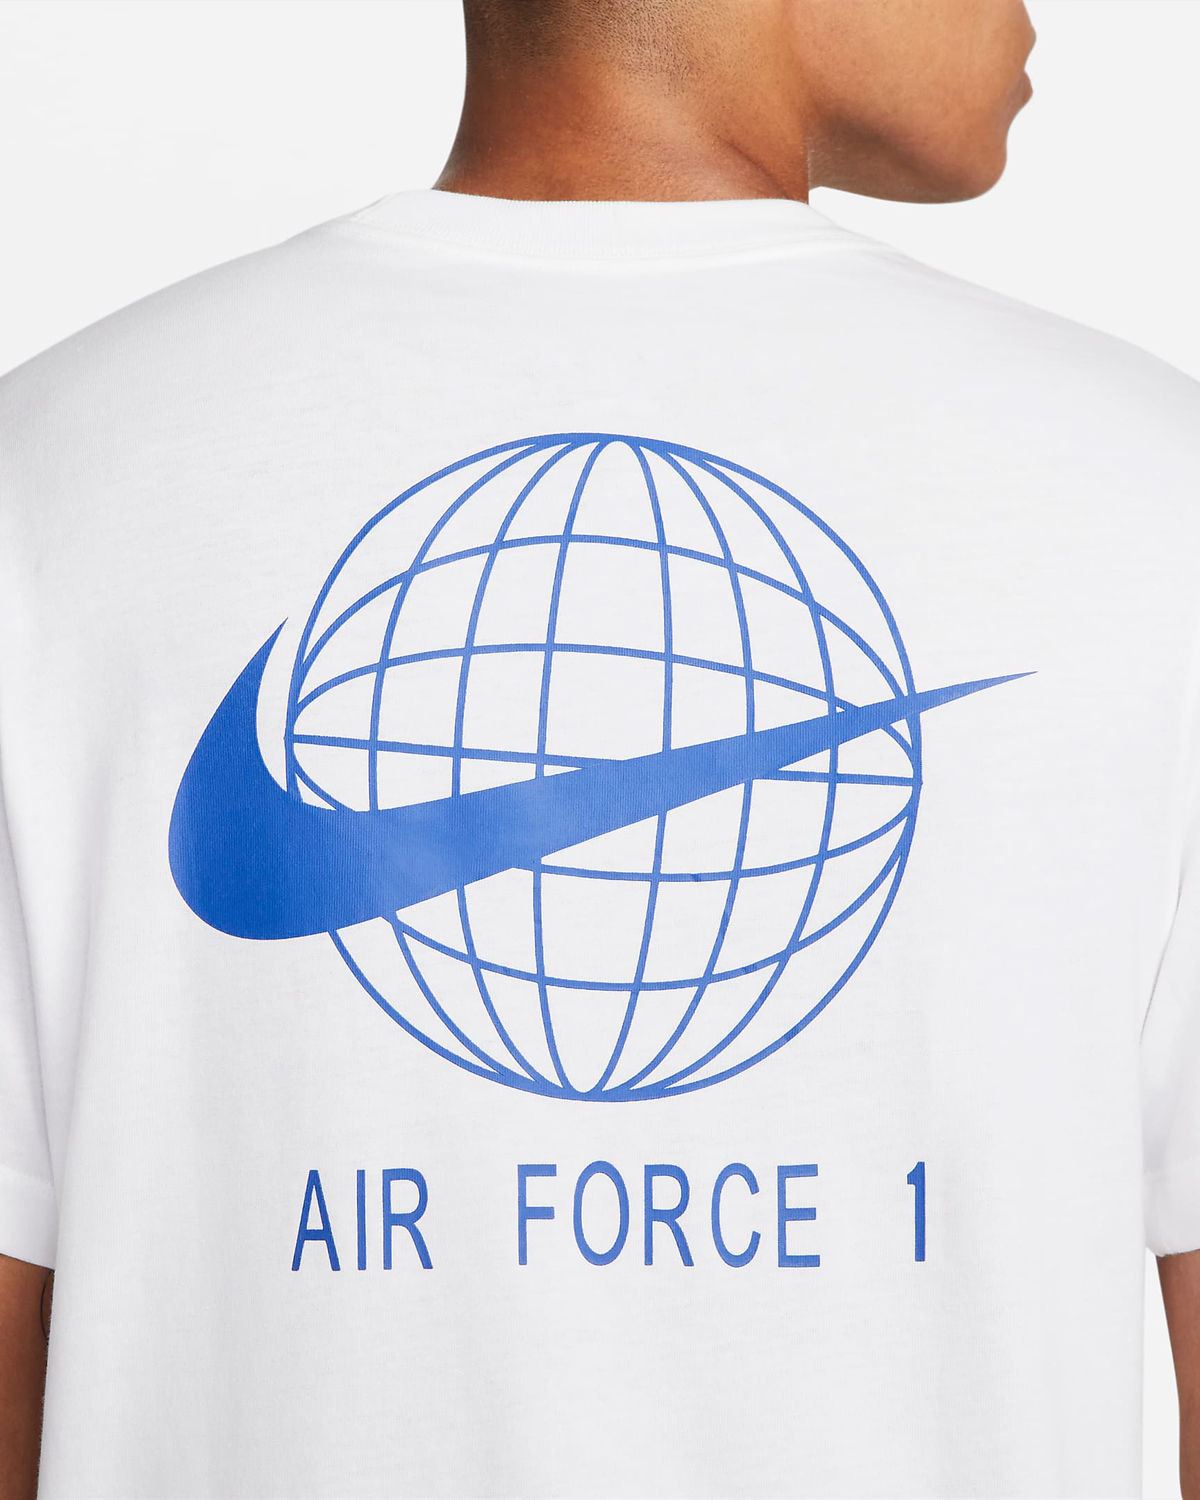 Nike-Air-Force-1-40th-Anniversary-T-Shirt-White-Blue-4